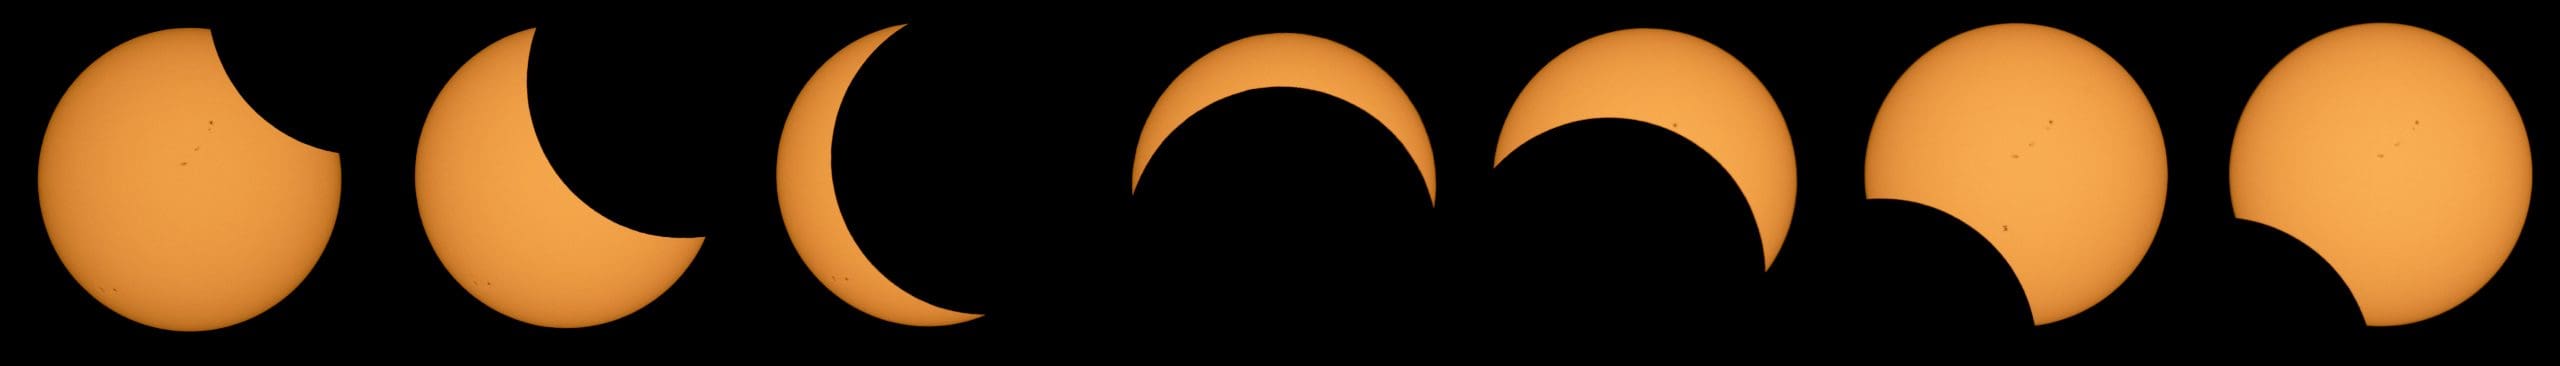 2017 Total Solar Eclipse - Partial View